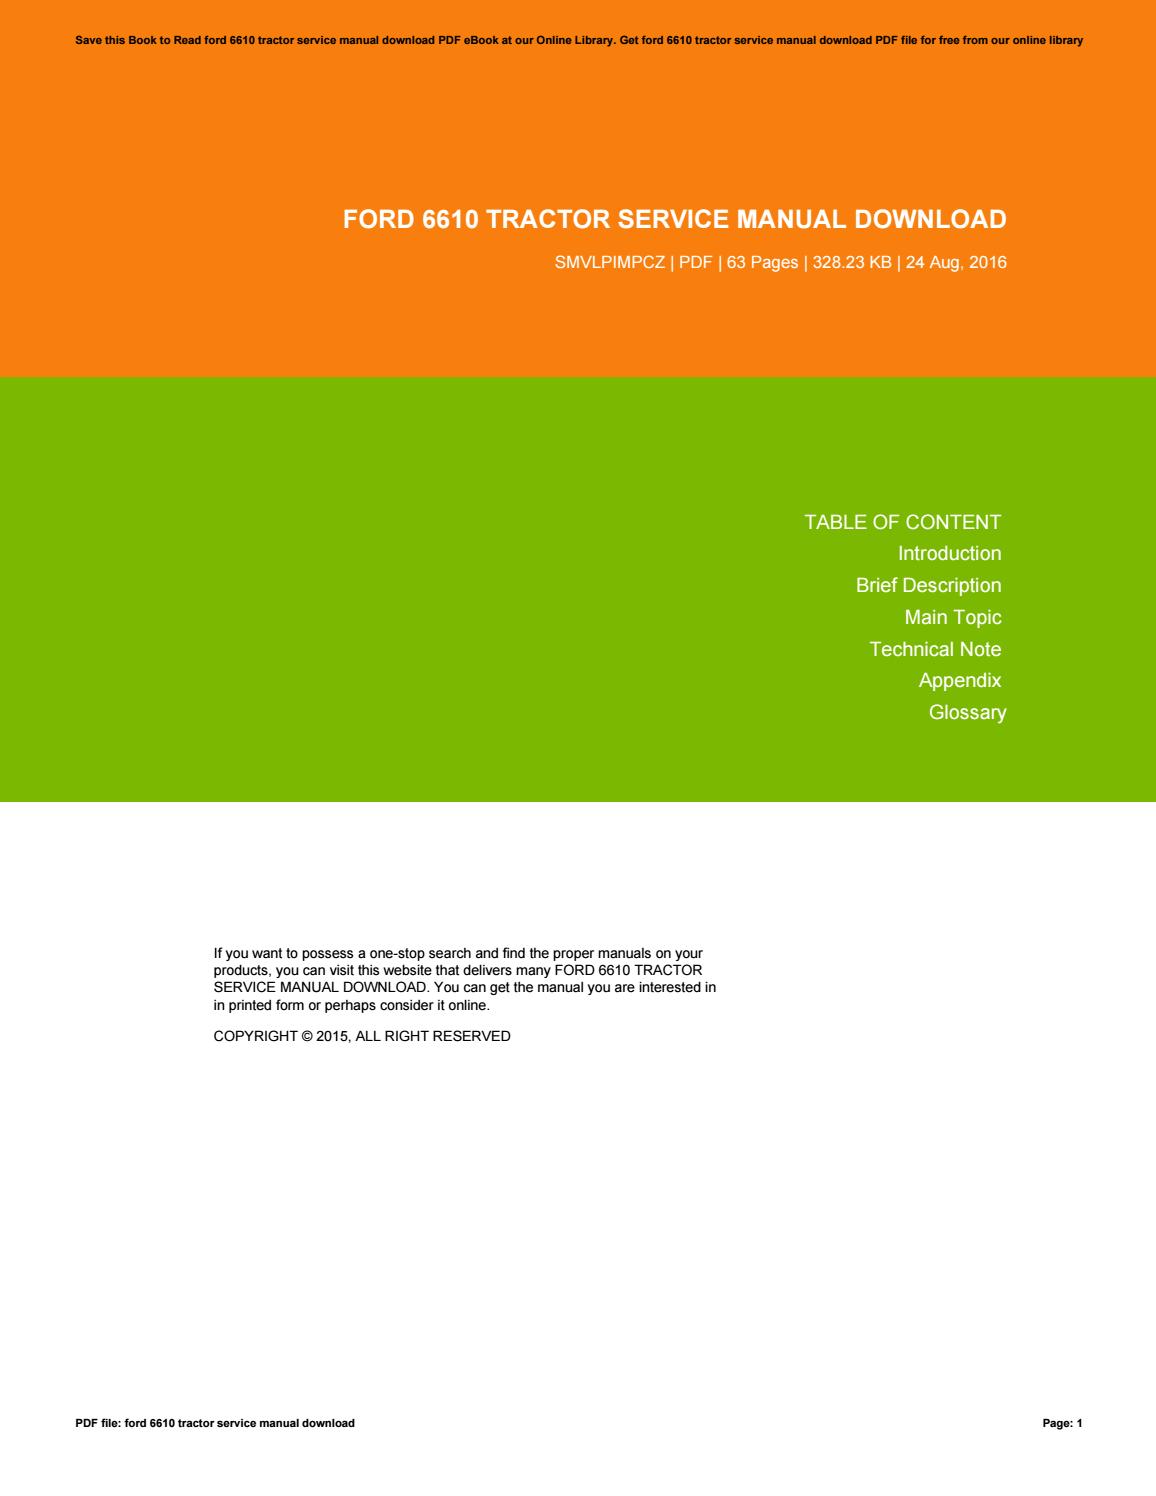 Ford 6610 tractor repair manual